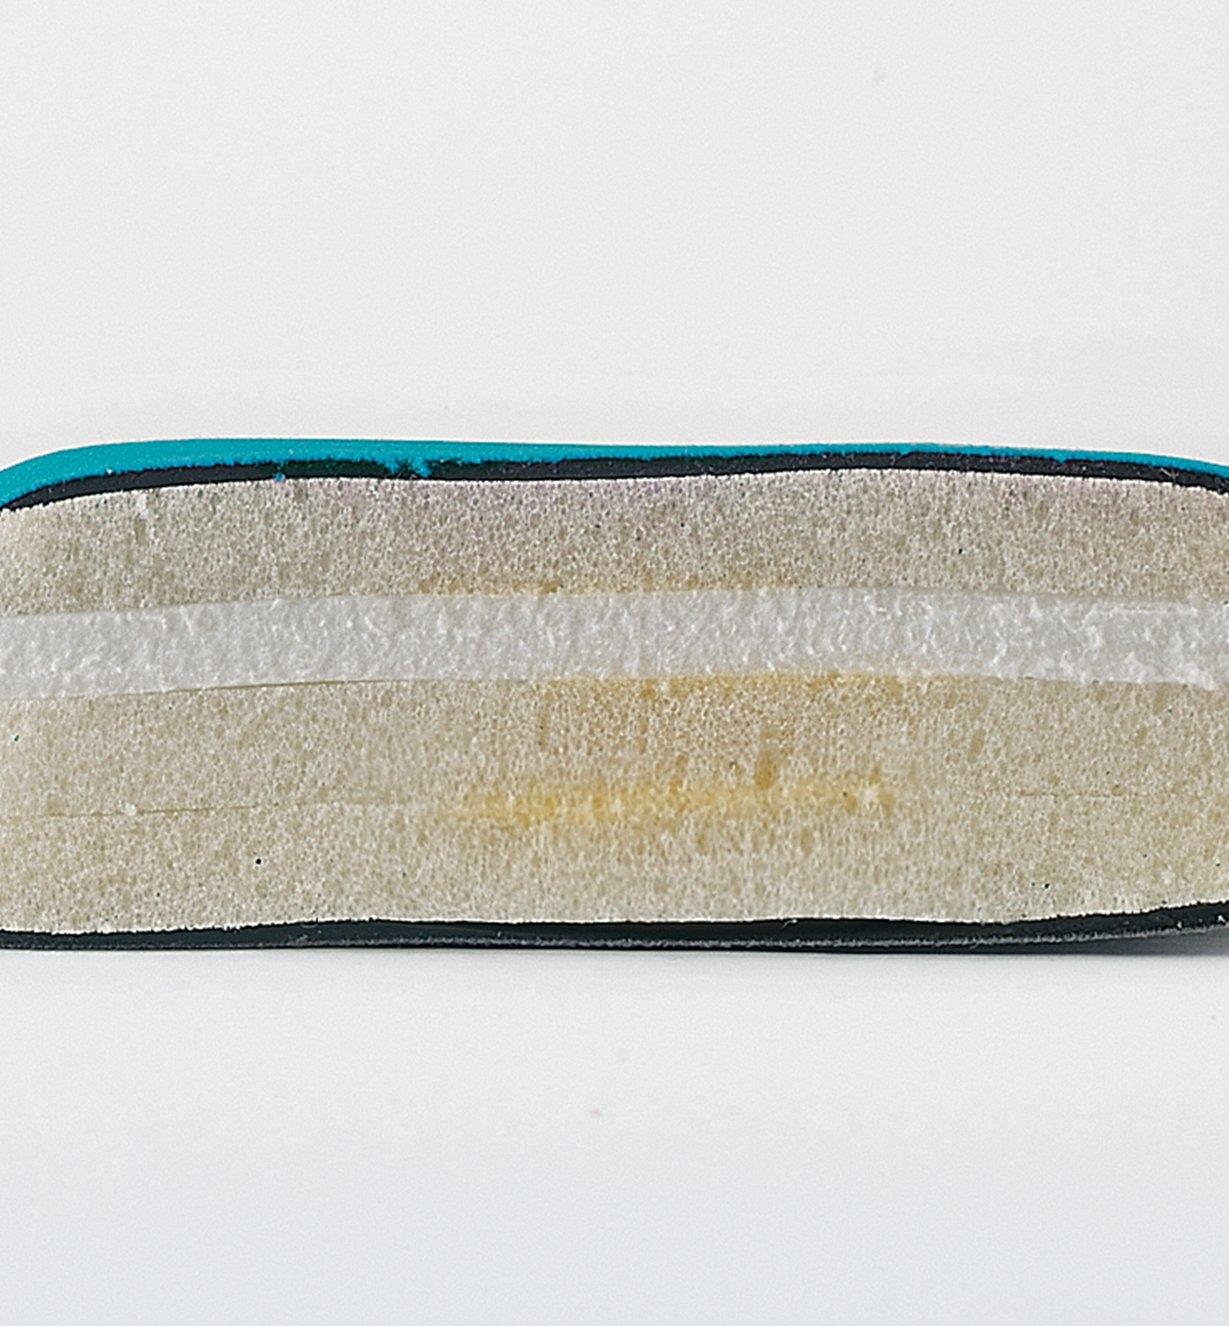 Cutaway view showing EVA foam encased in memory foam